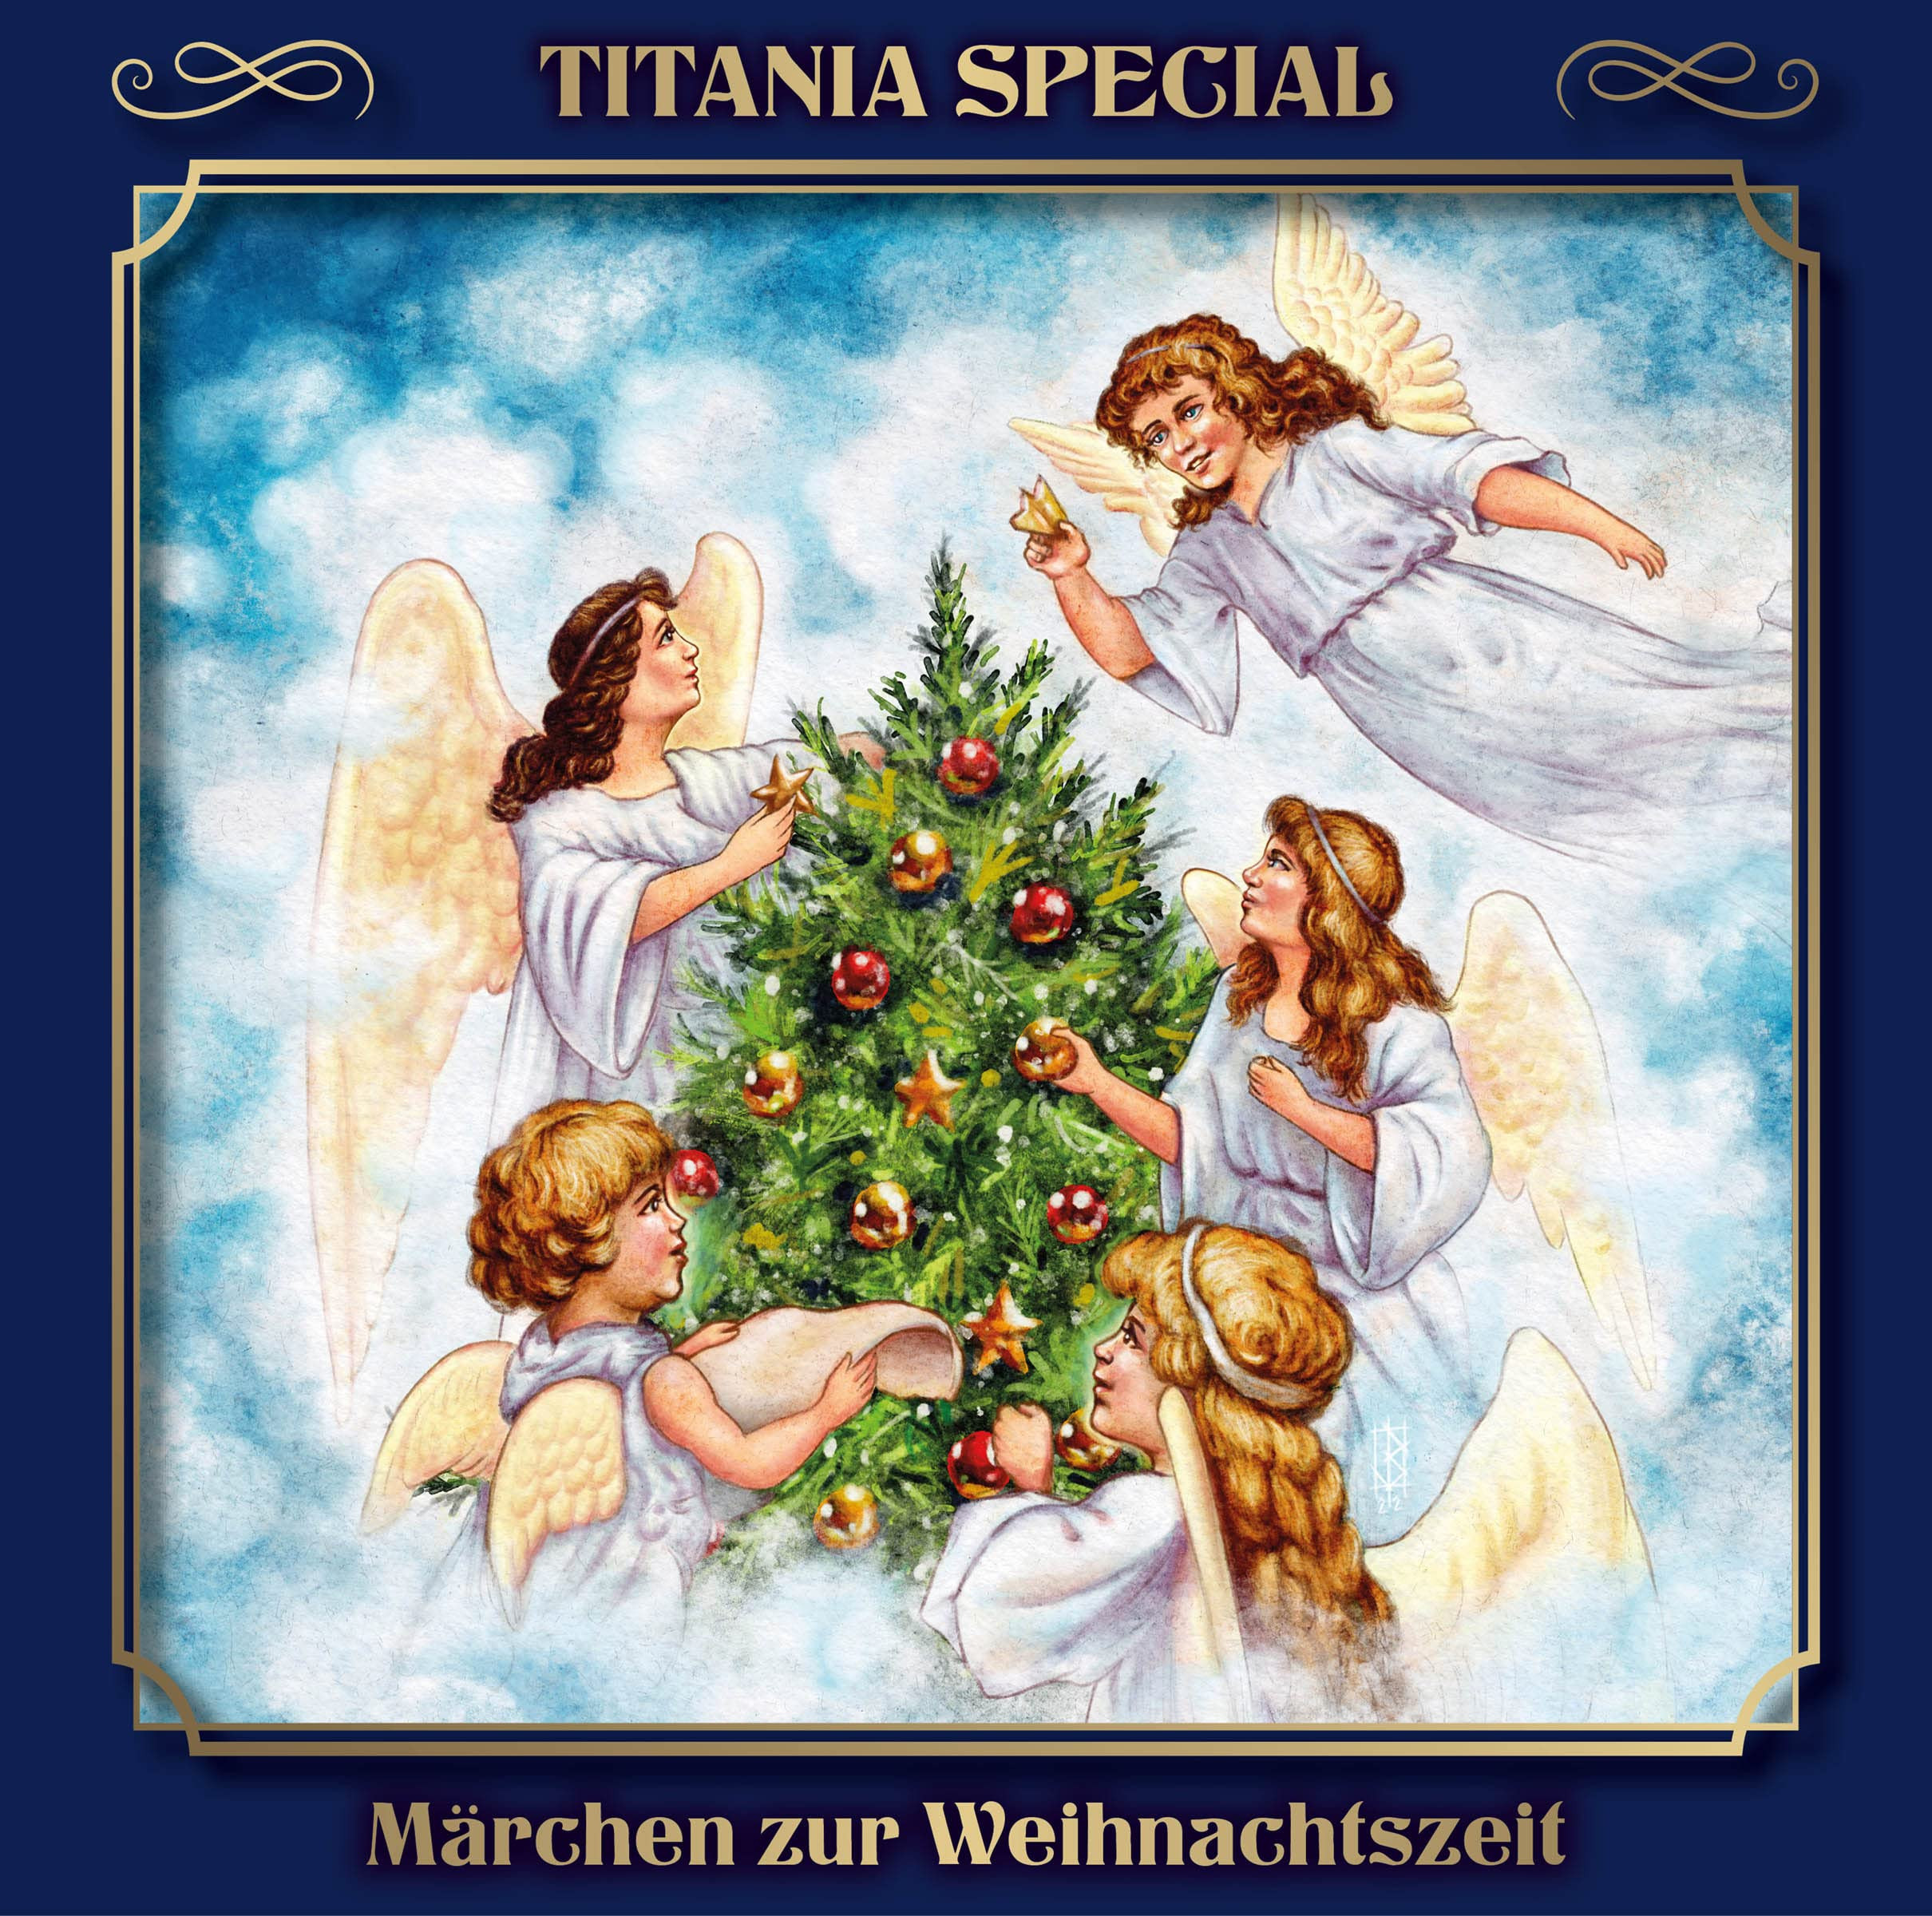 Titania Special - 17 - MÄRCHEN ZUR WEIHNACHTSZEIT